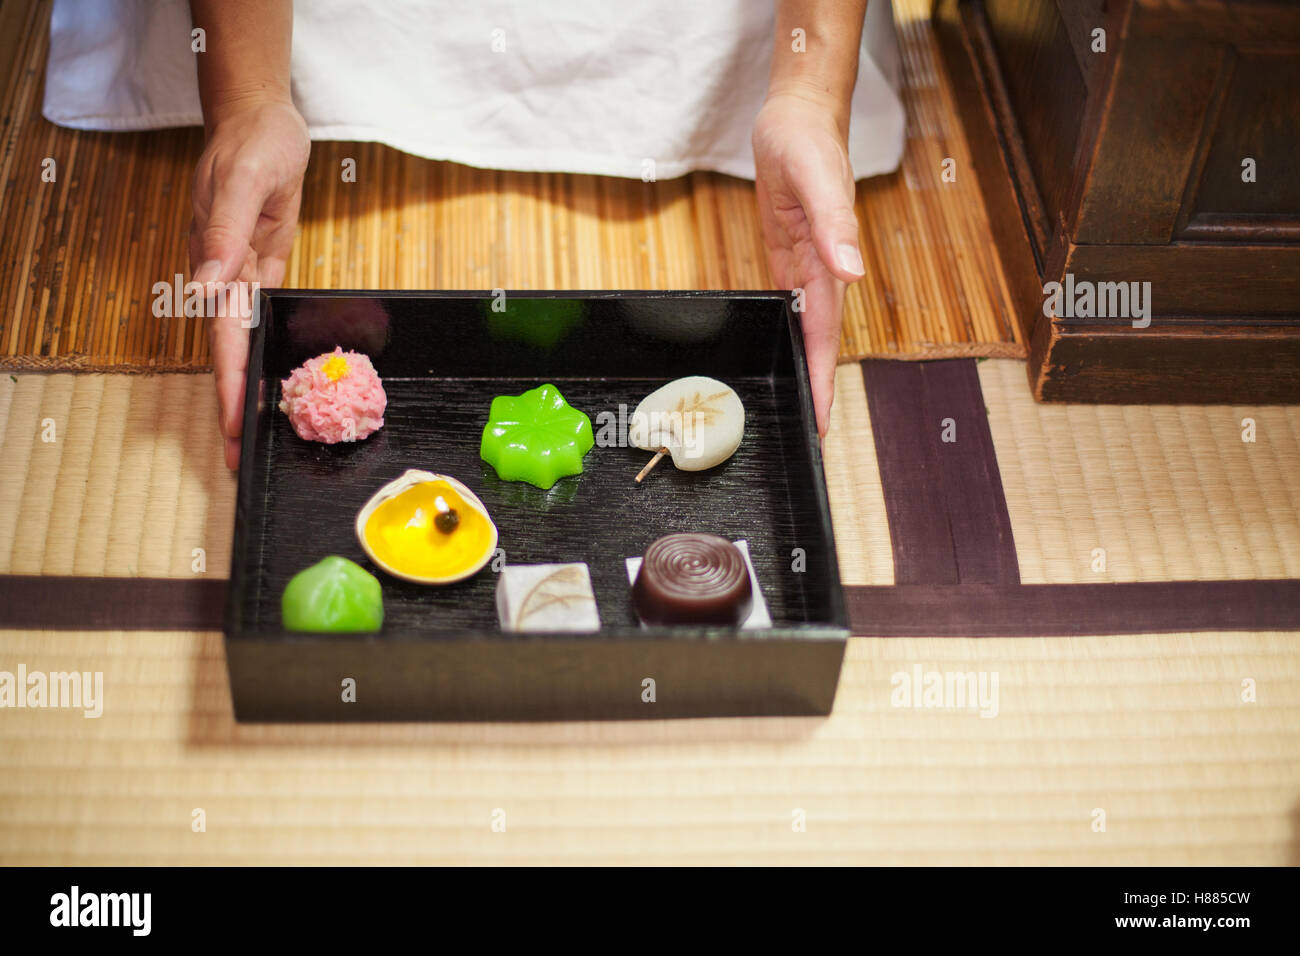 Eine kleine handwerkliche Hersteller von Wagashi präsentiert ein Tablett mit ausgewählten Wagashi in verschiedenen Formen und Geschmacksrichtungen. Stockfoto